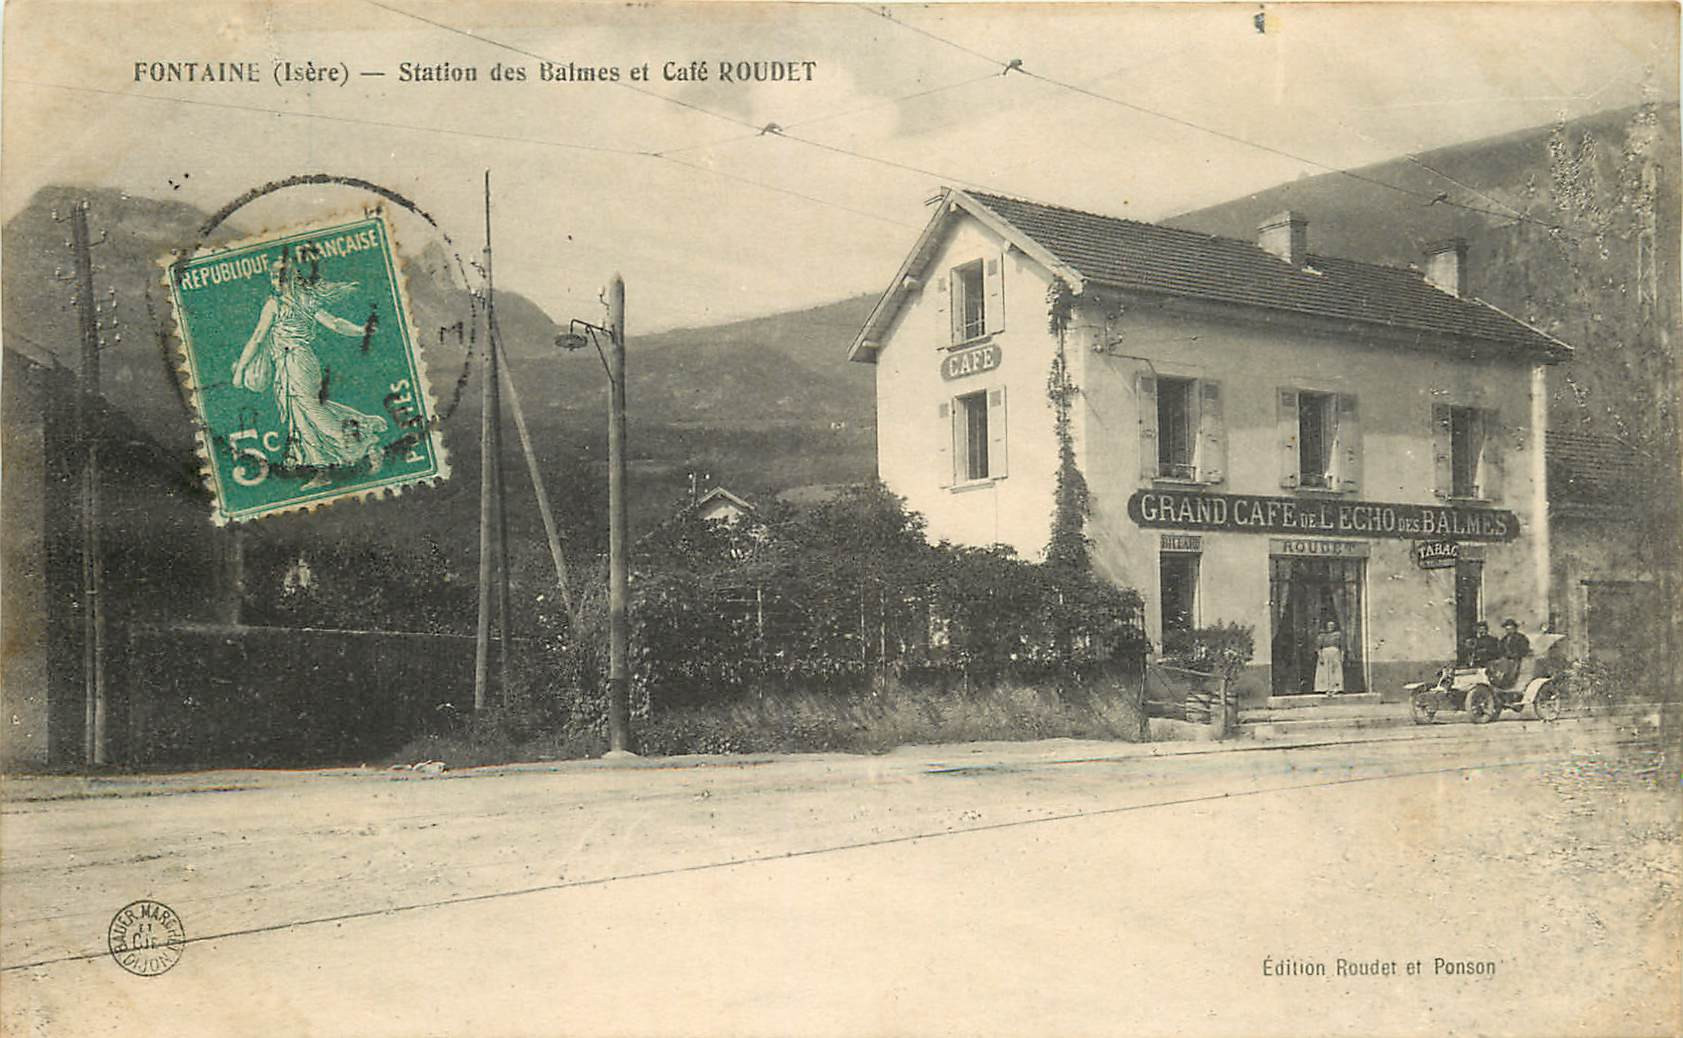 WW 38 FONTAINE. Station tramways des Balmes et voiture devant Café de l'Echo par Roudet 1911